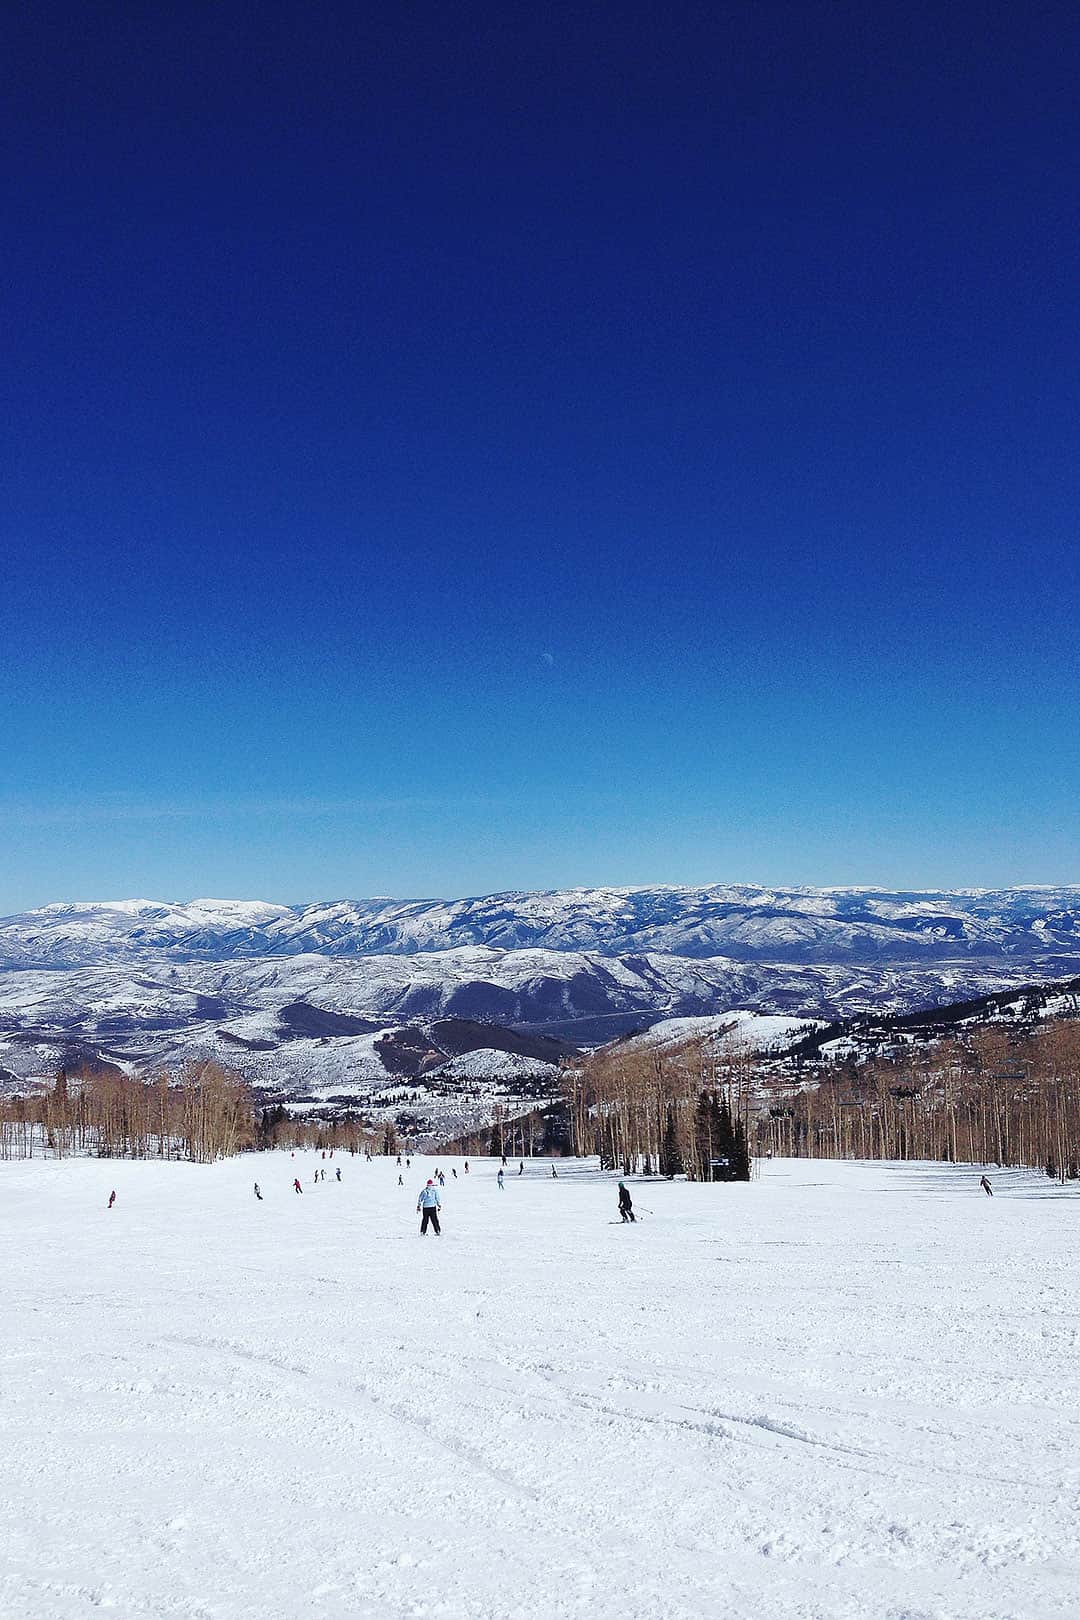 Snowboarding Park City Utah + 101 Things to Do in Utah - Your Ultimate Utah Bucket List